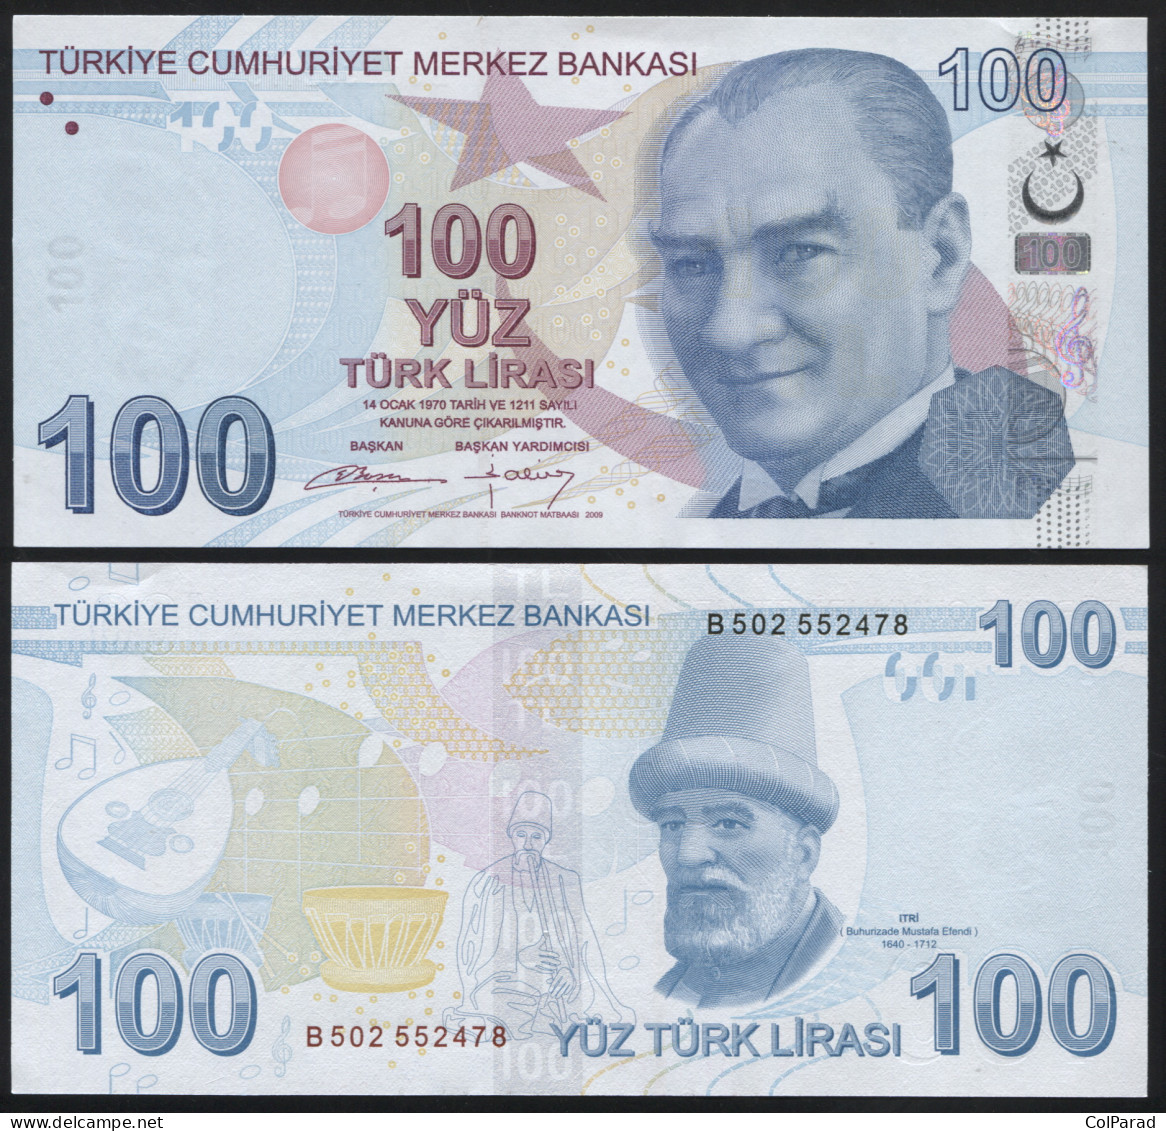 TURKEY 100 TÜRK LIRASI - 2009 (2012) - Paper Unc - P.226b Banknote - Turkey